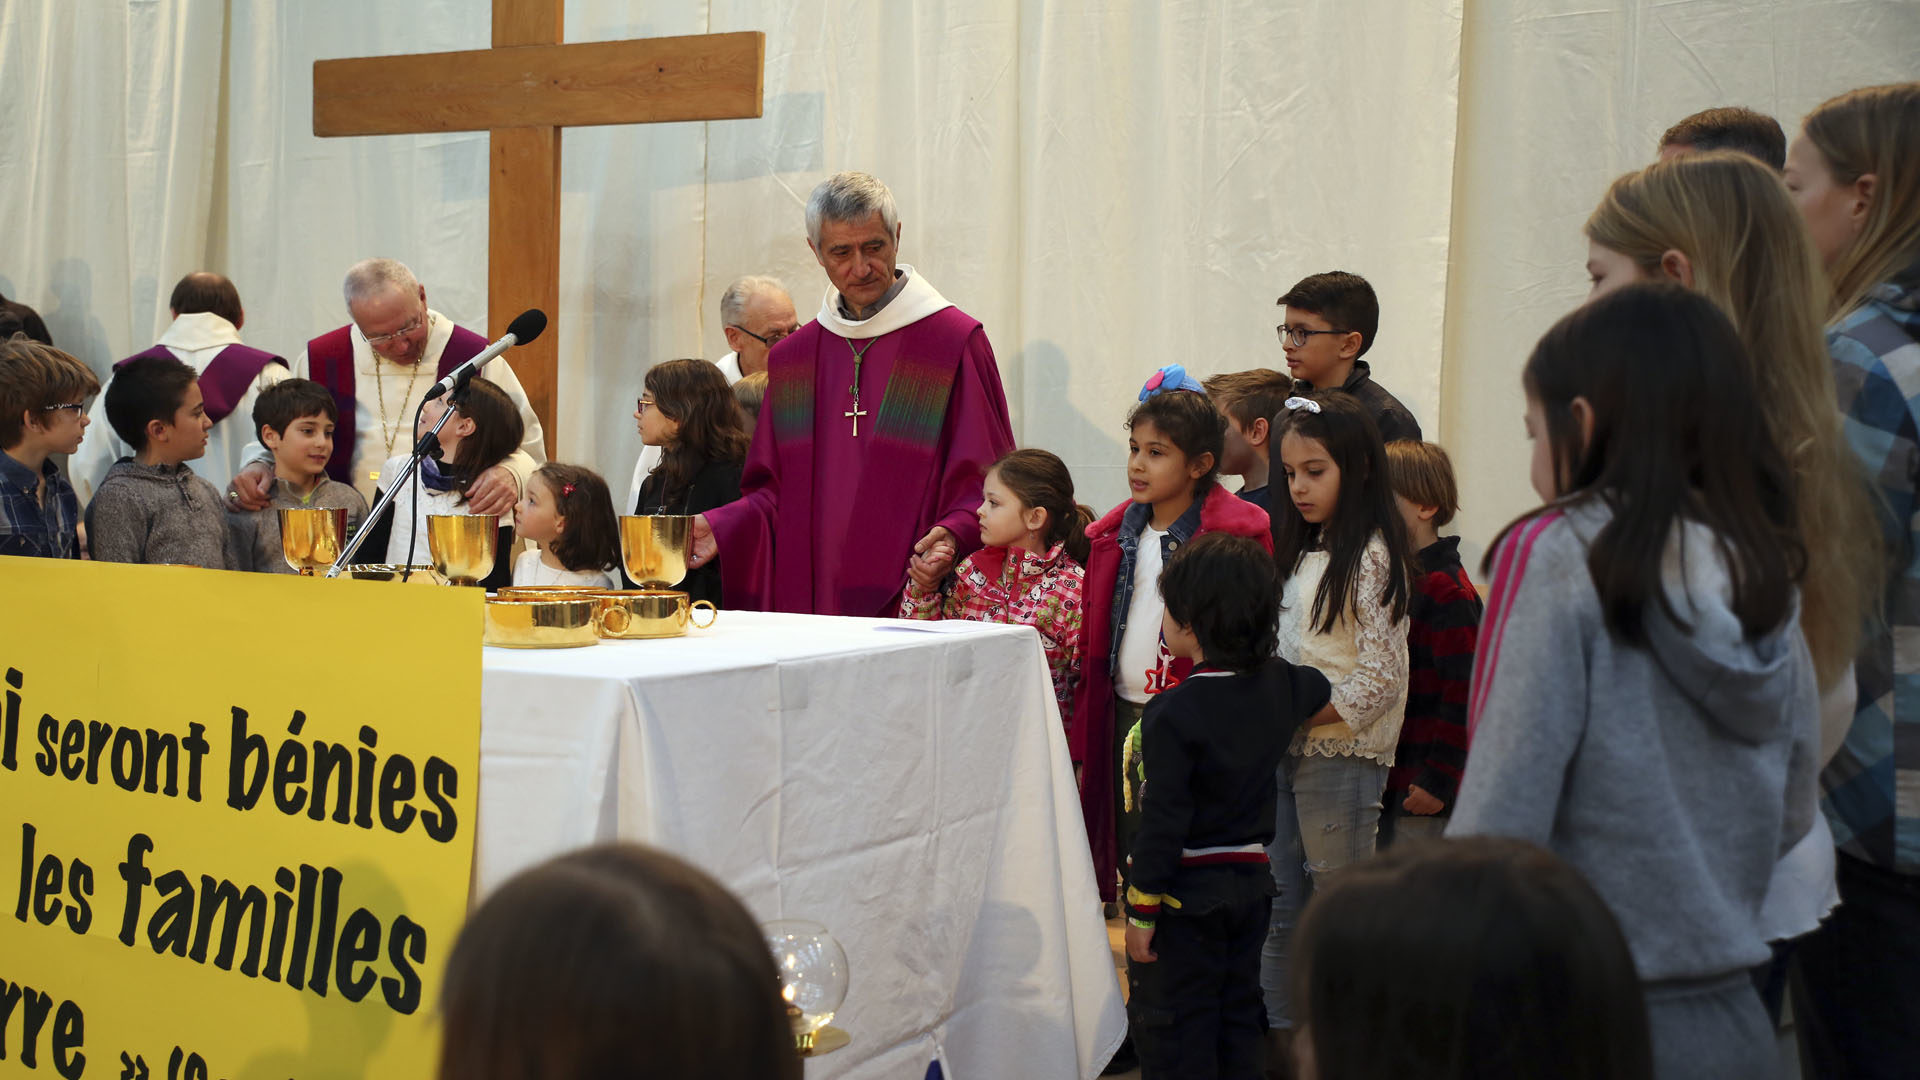 Sion le 12 mars 2017. Messe des familles au festival des familles. Les enfants ont rejoint Mgr Lovey pour le 'Notre Père'. (Photo: B. Hallet)